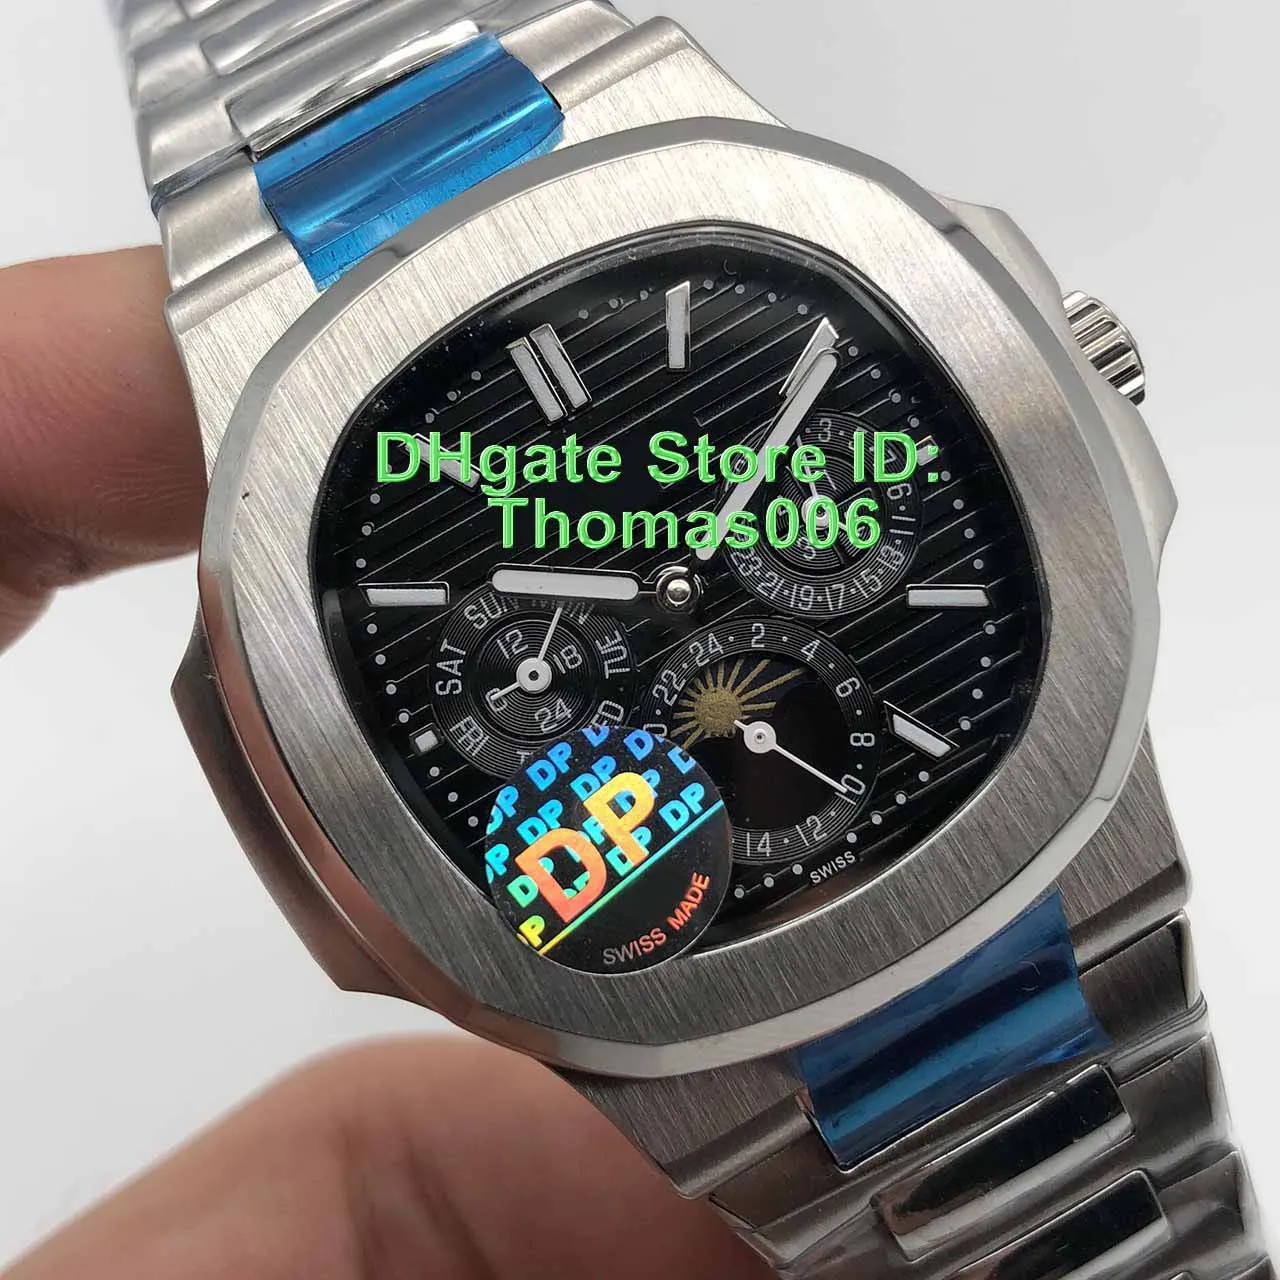 DP de fábrica 2019 novo esporte Nautilus Moon Phase Castanho / Cinza Dial 5740 / 1G-001 Automatic pulseira de aço Mens Watch inoxidável de alta qualidade dos relógios